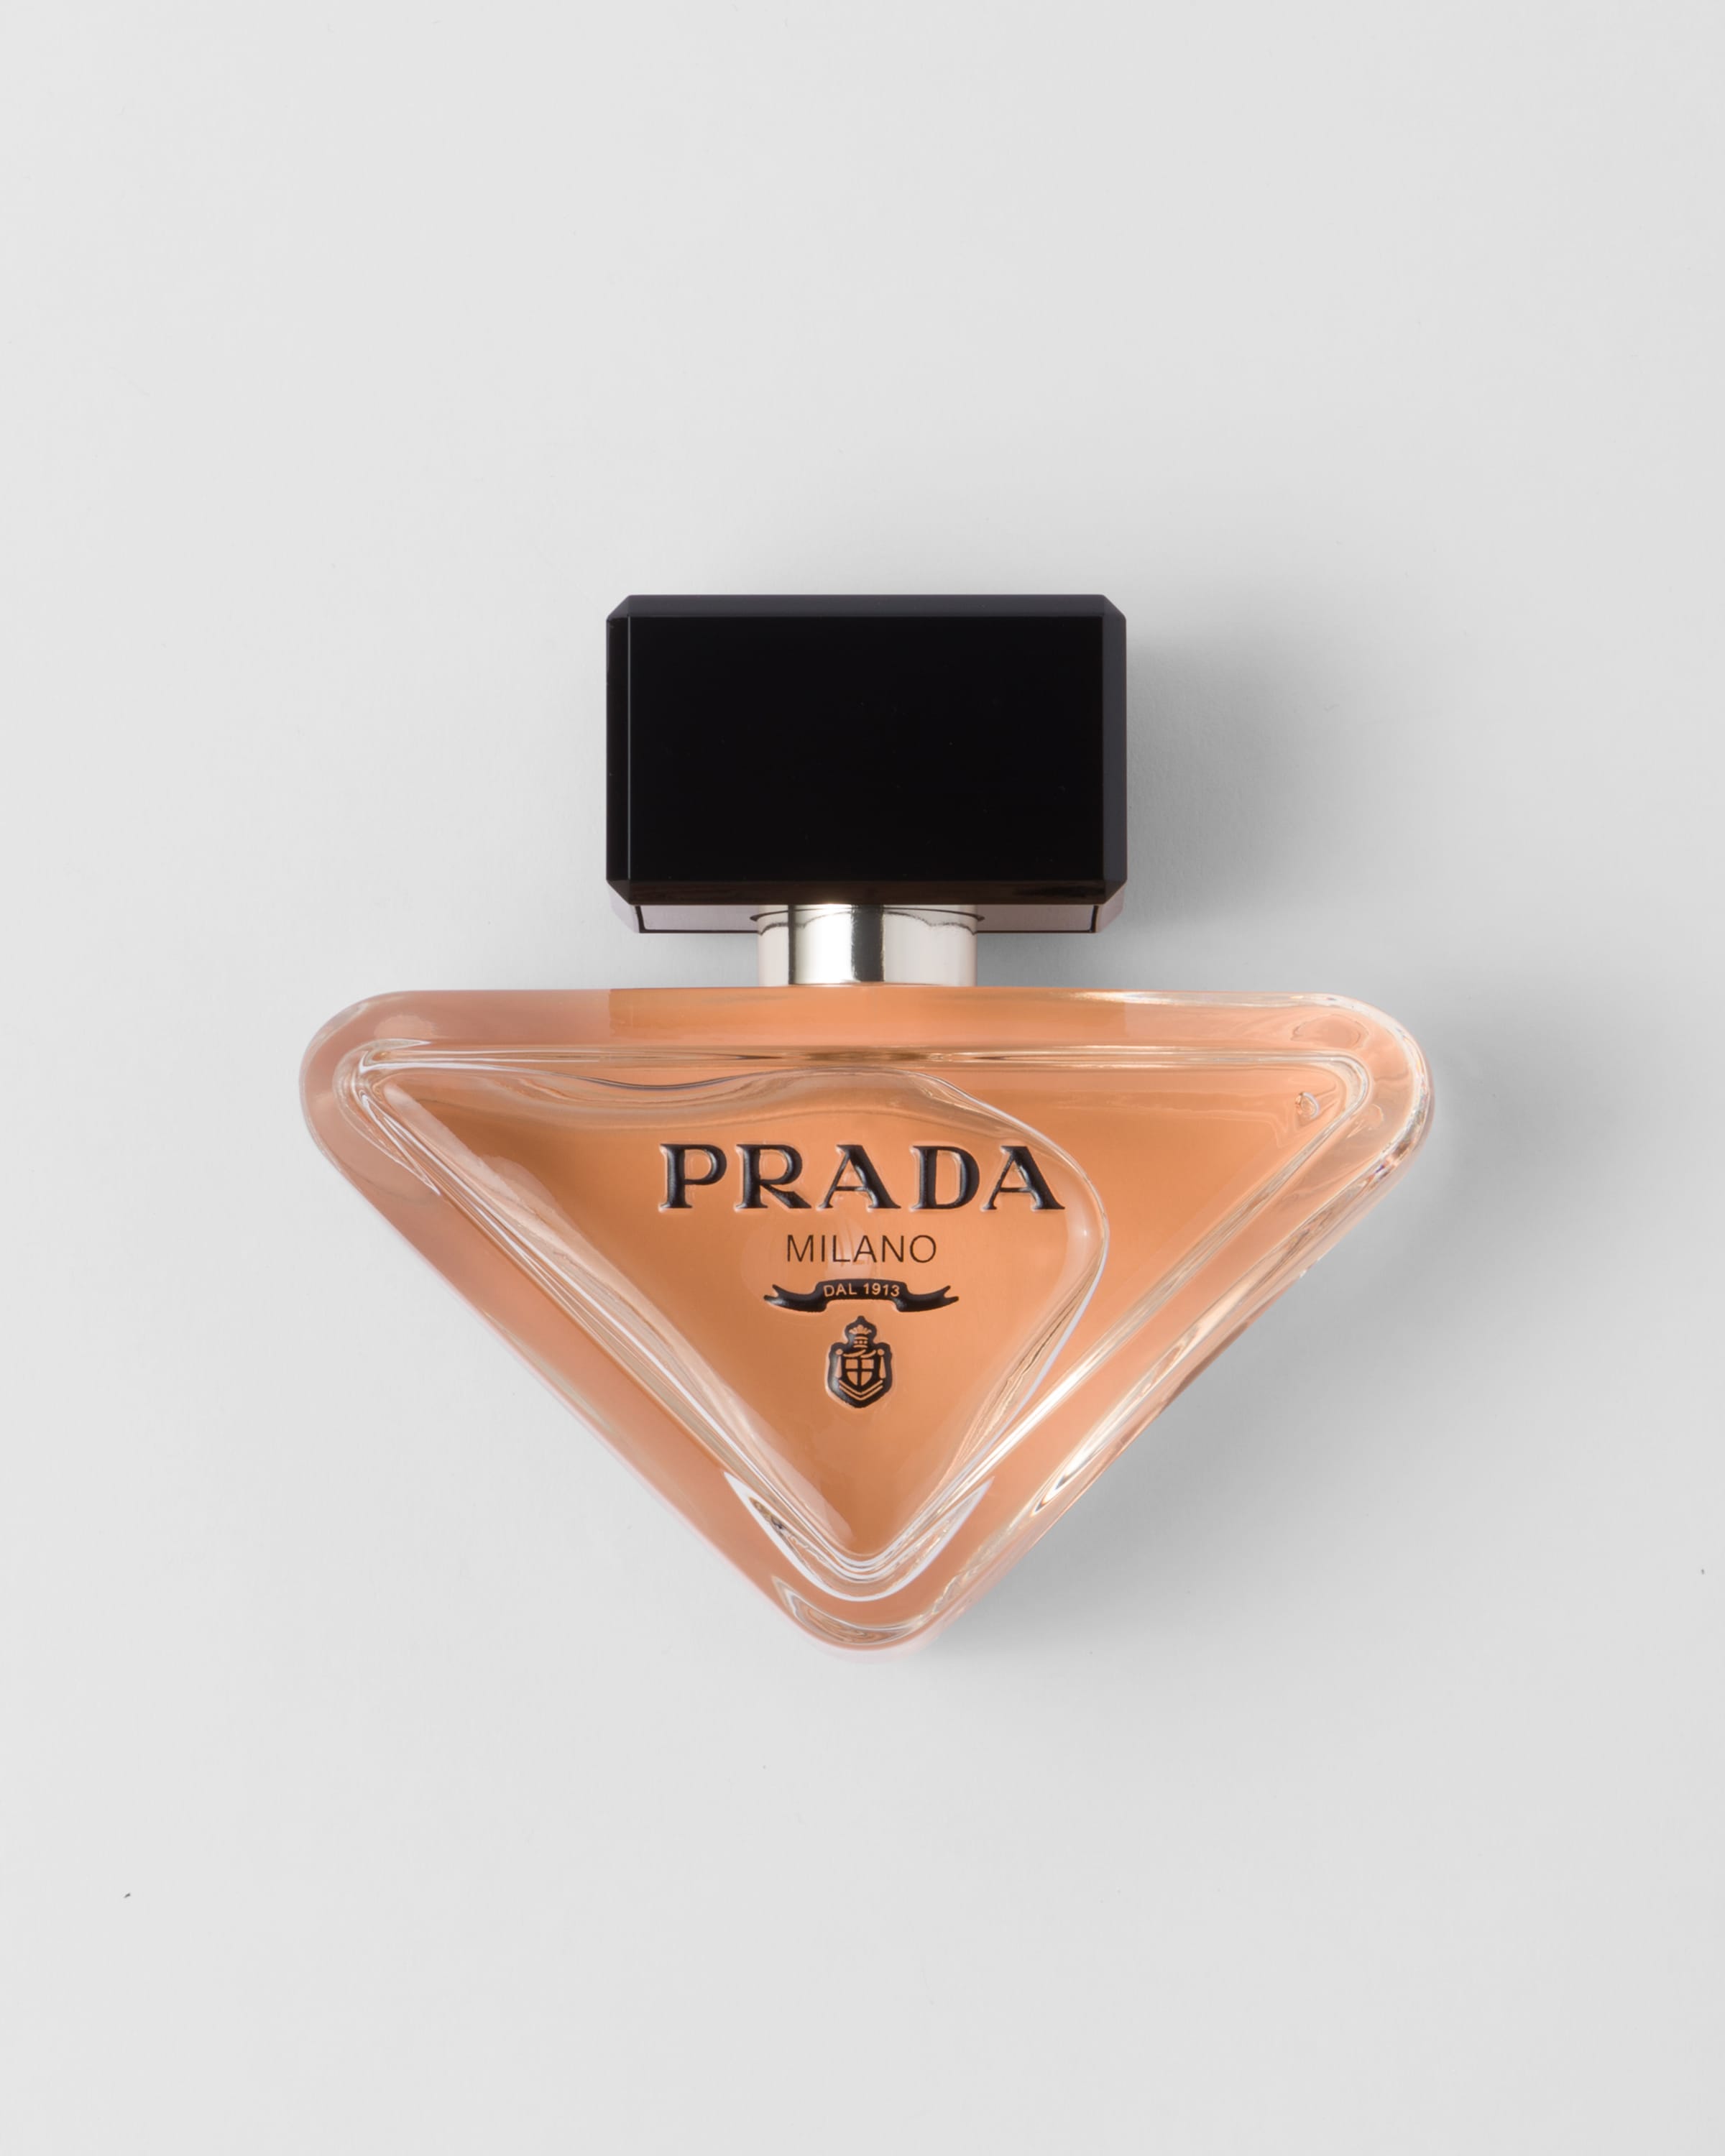 Nước Hoa PRADA Paradoxe Eau de Parfum #50 mL